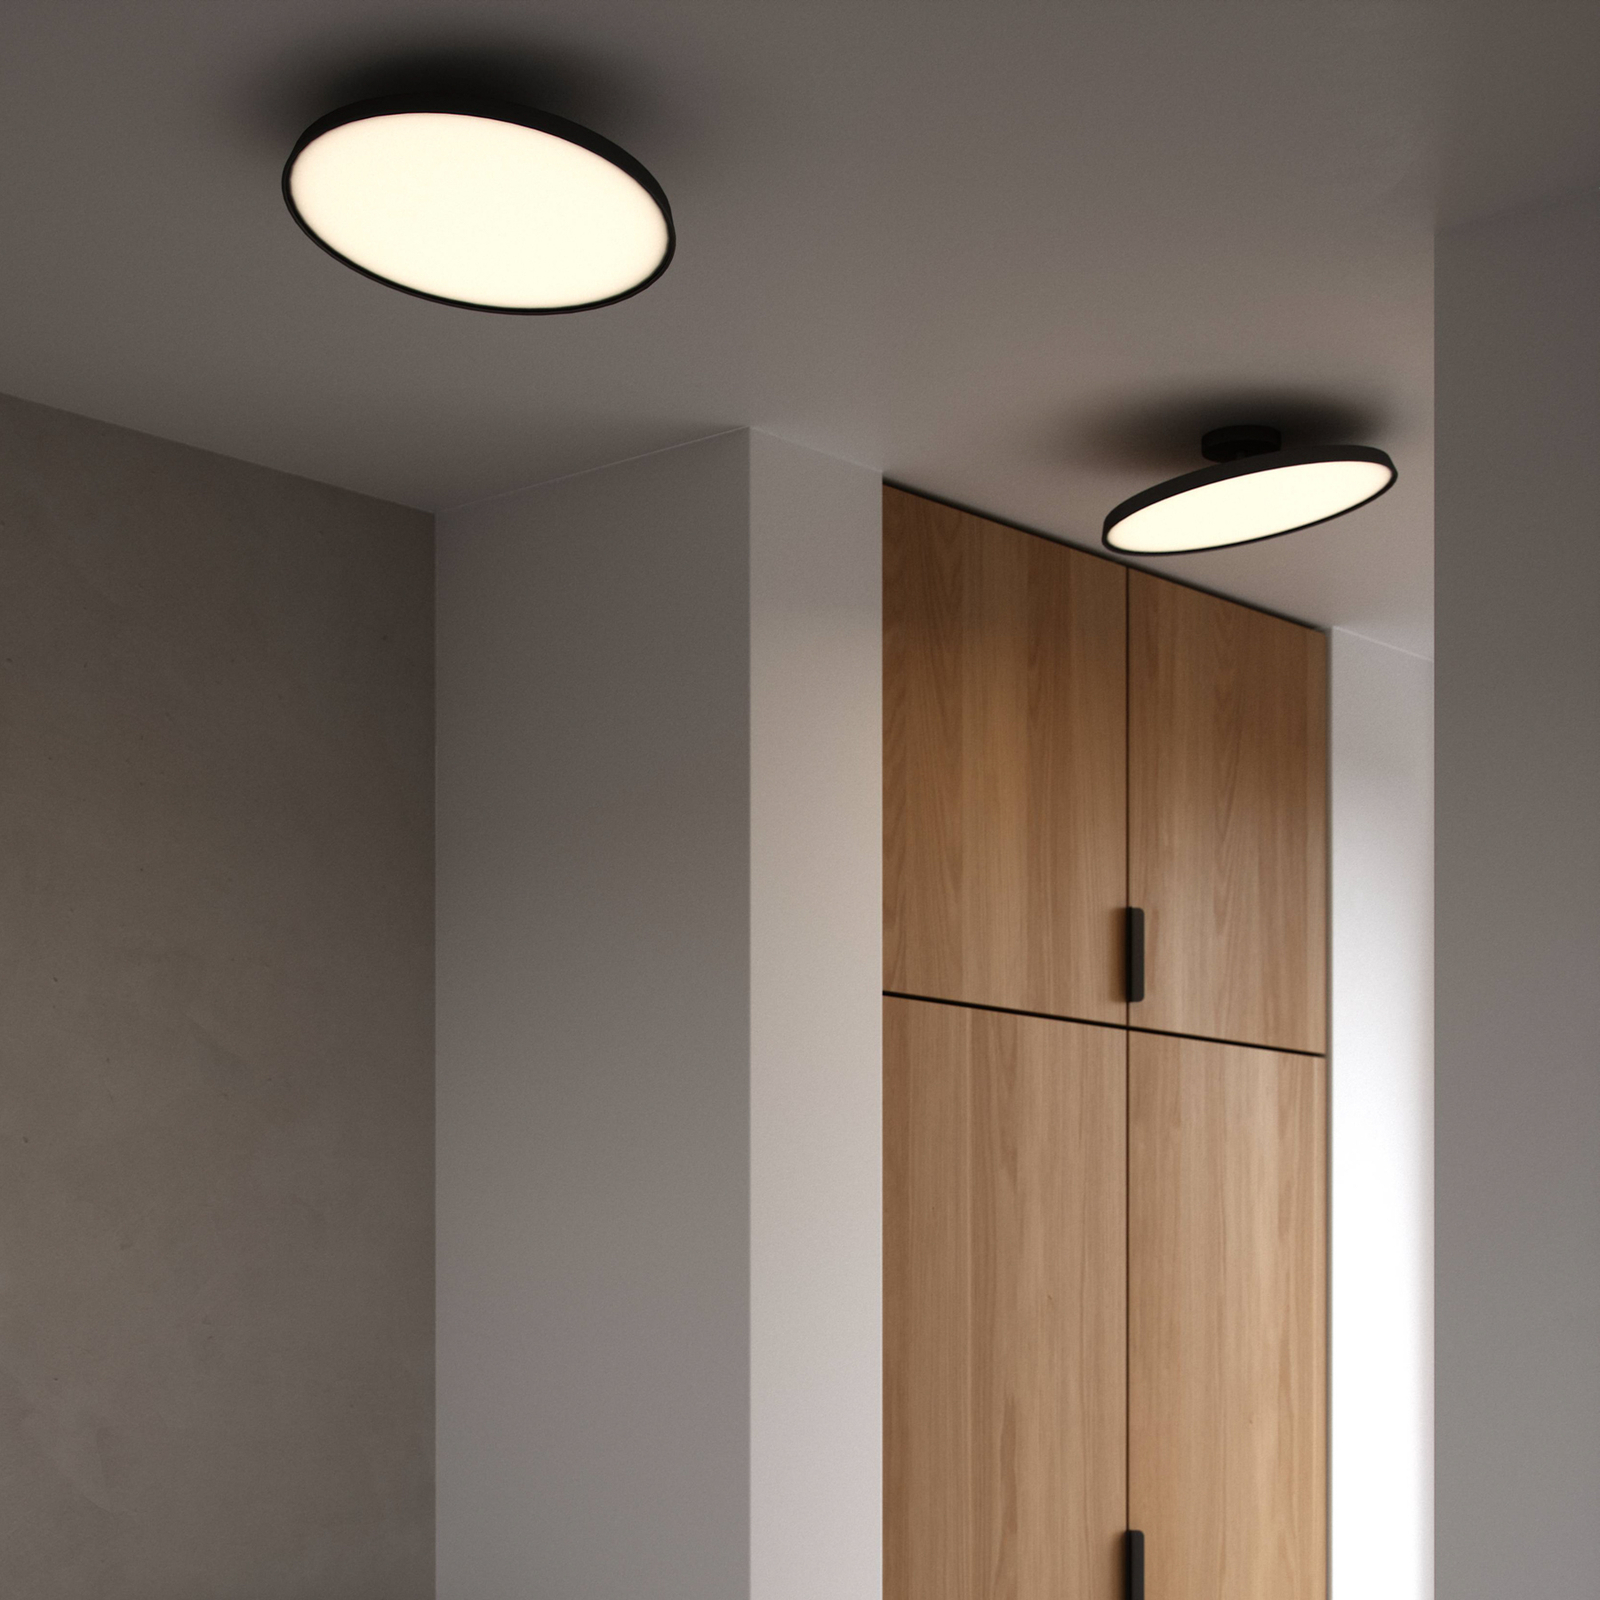 Kaito Pro LED ceiling light, black, Ø 38.5 cm